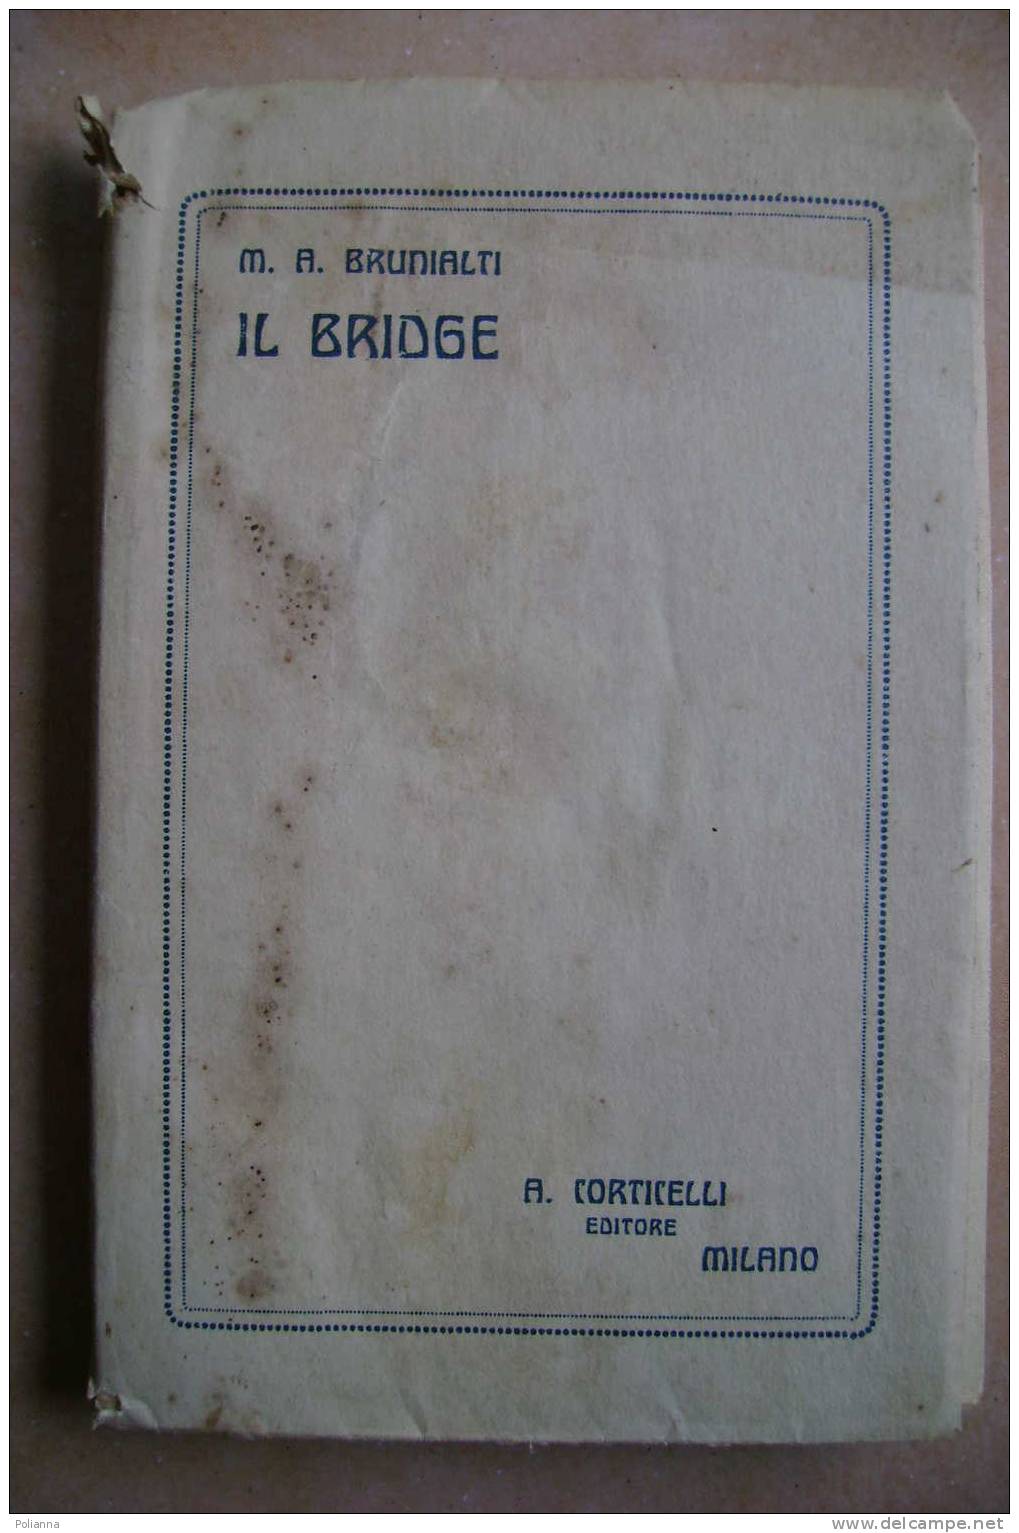 PDM/16 Brunialti IL BRIDGE Corticelli Editore 1923/giochi Carte - Jeux